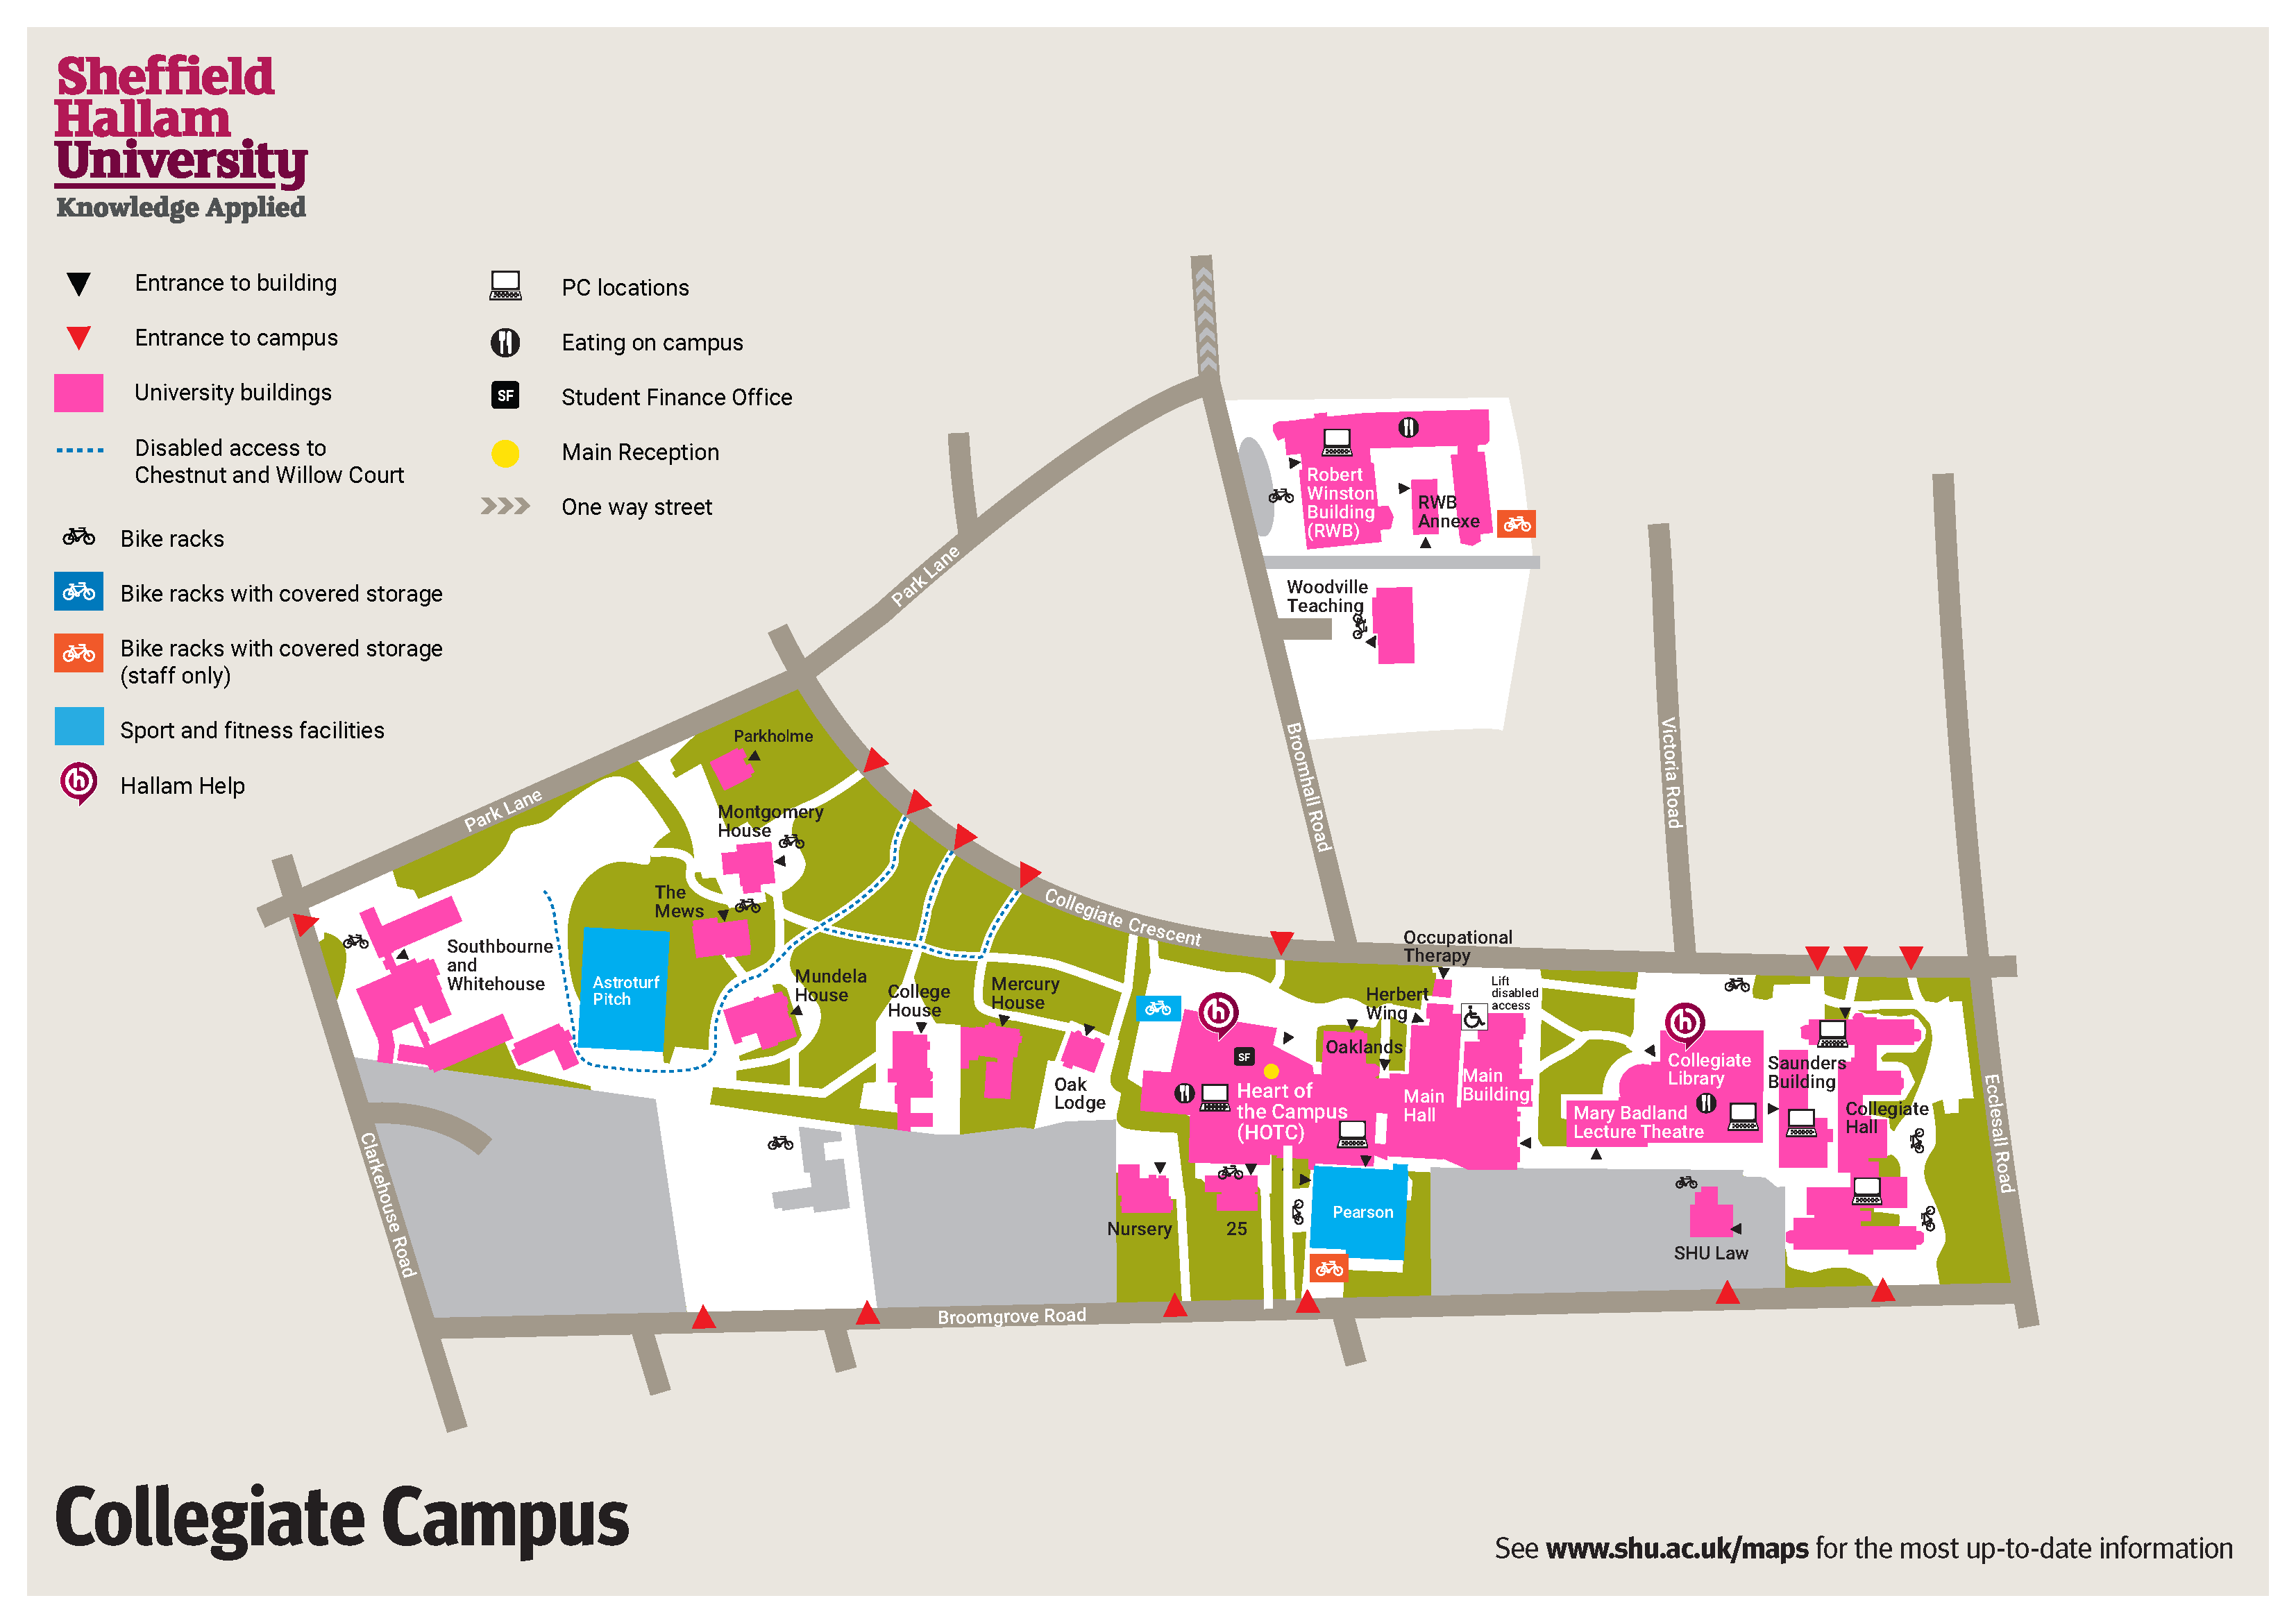 Collegiate campus map